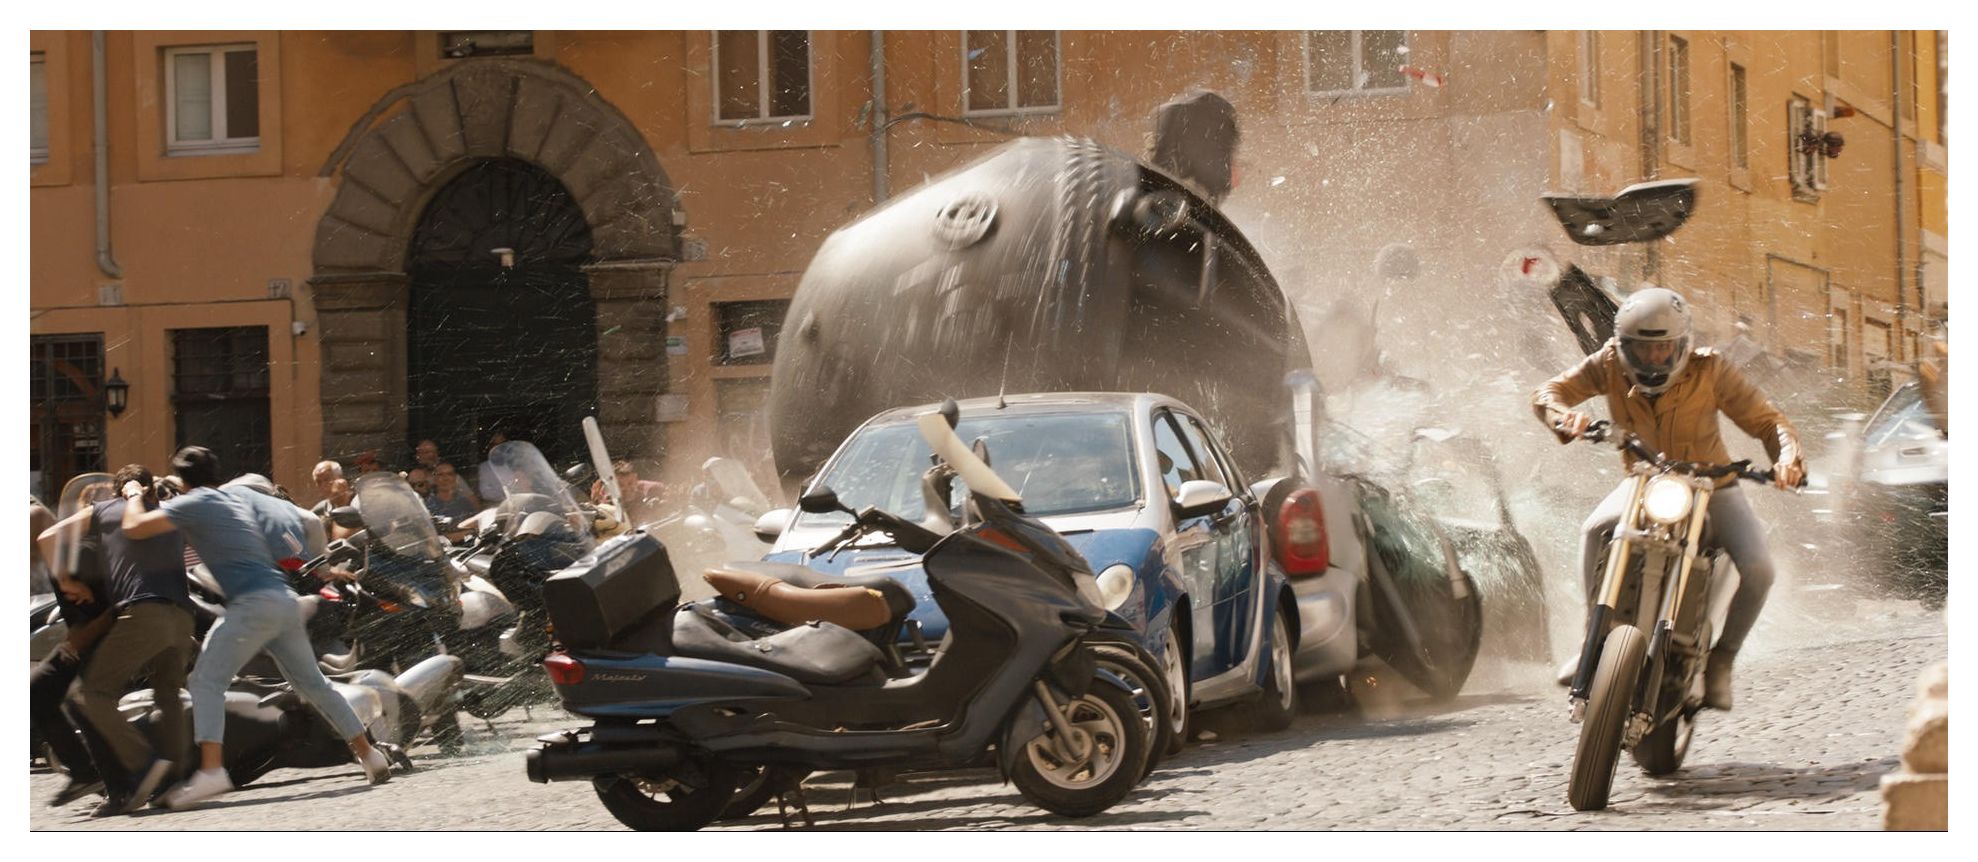 Fast & Furious 10' von 'Louis Leterrier' - 'DVD